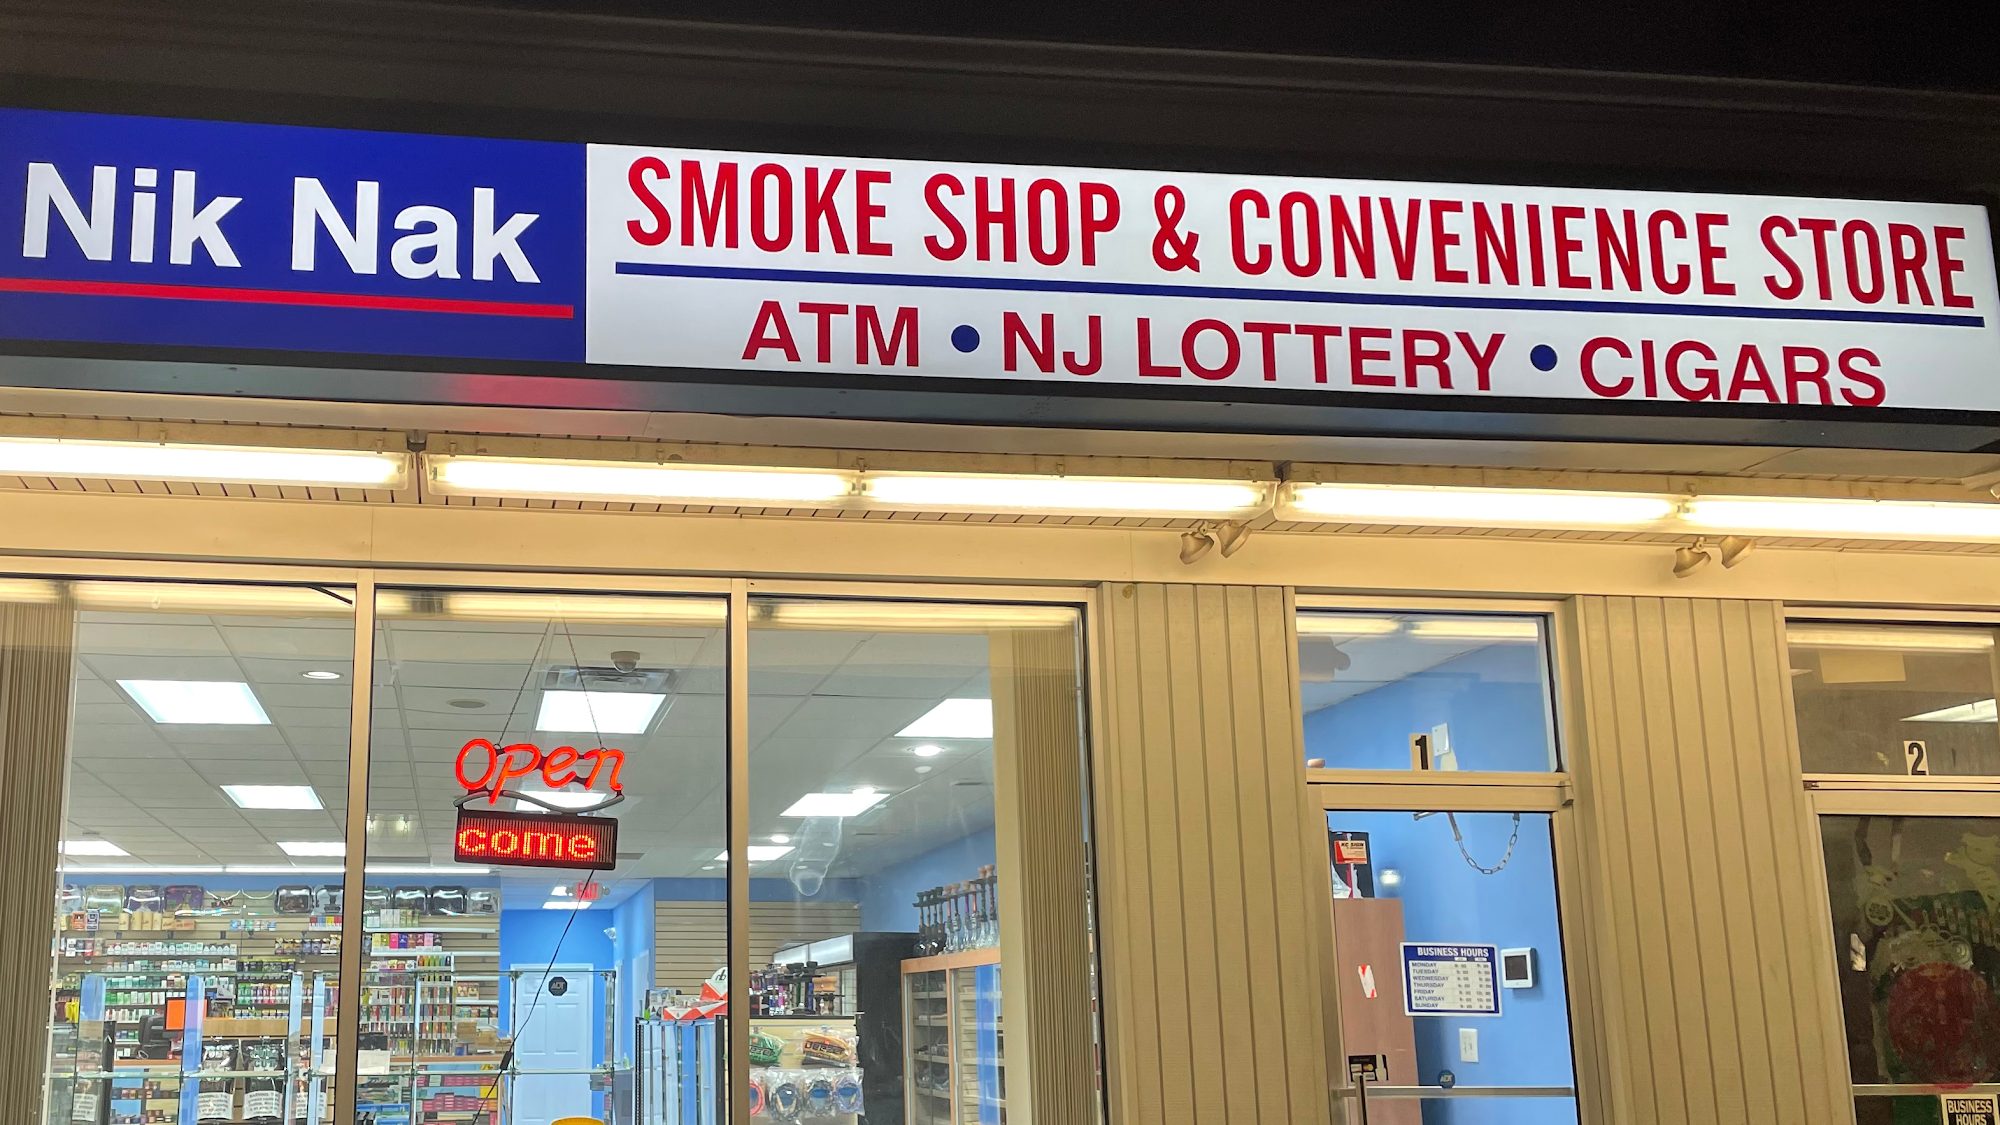 Nik Nak Smoke Shop